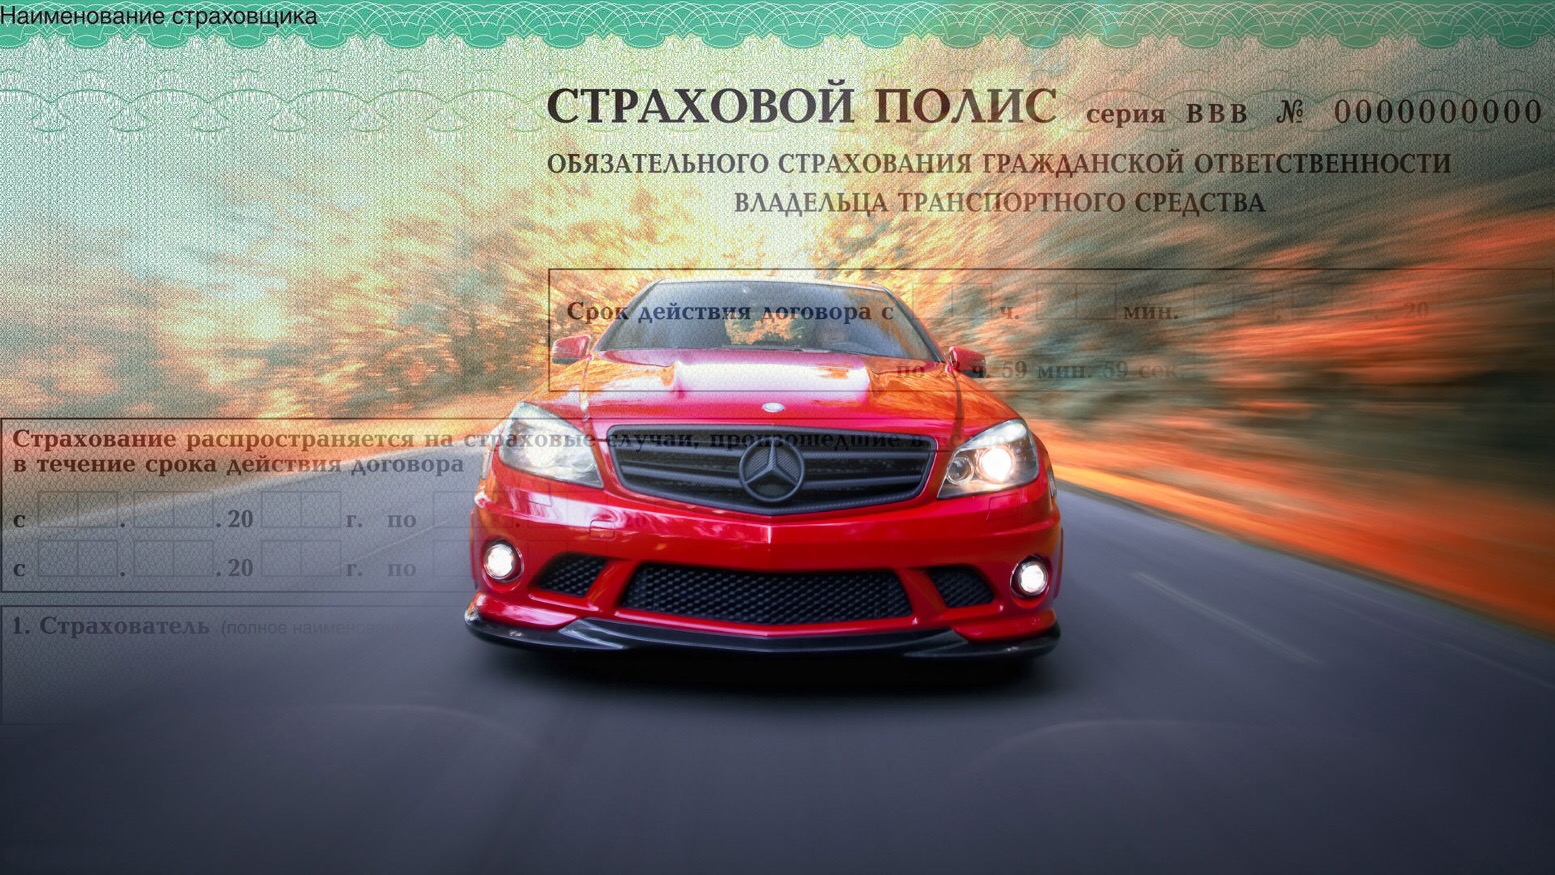 Автострахование Онлайн В Крыму Осаго